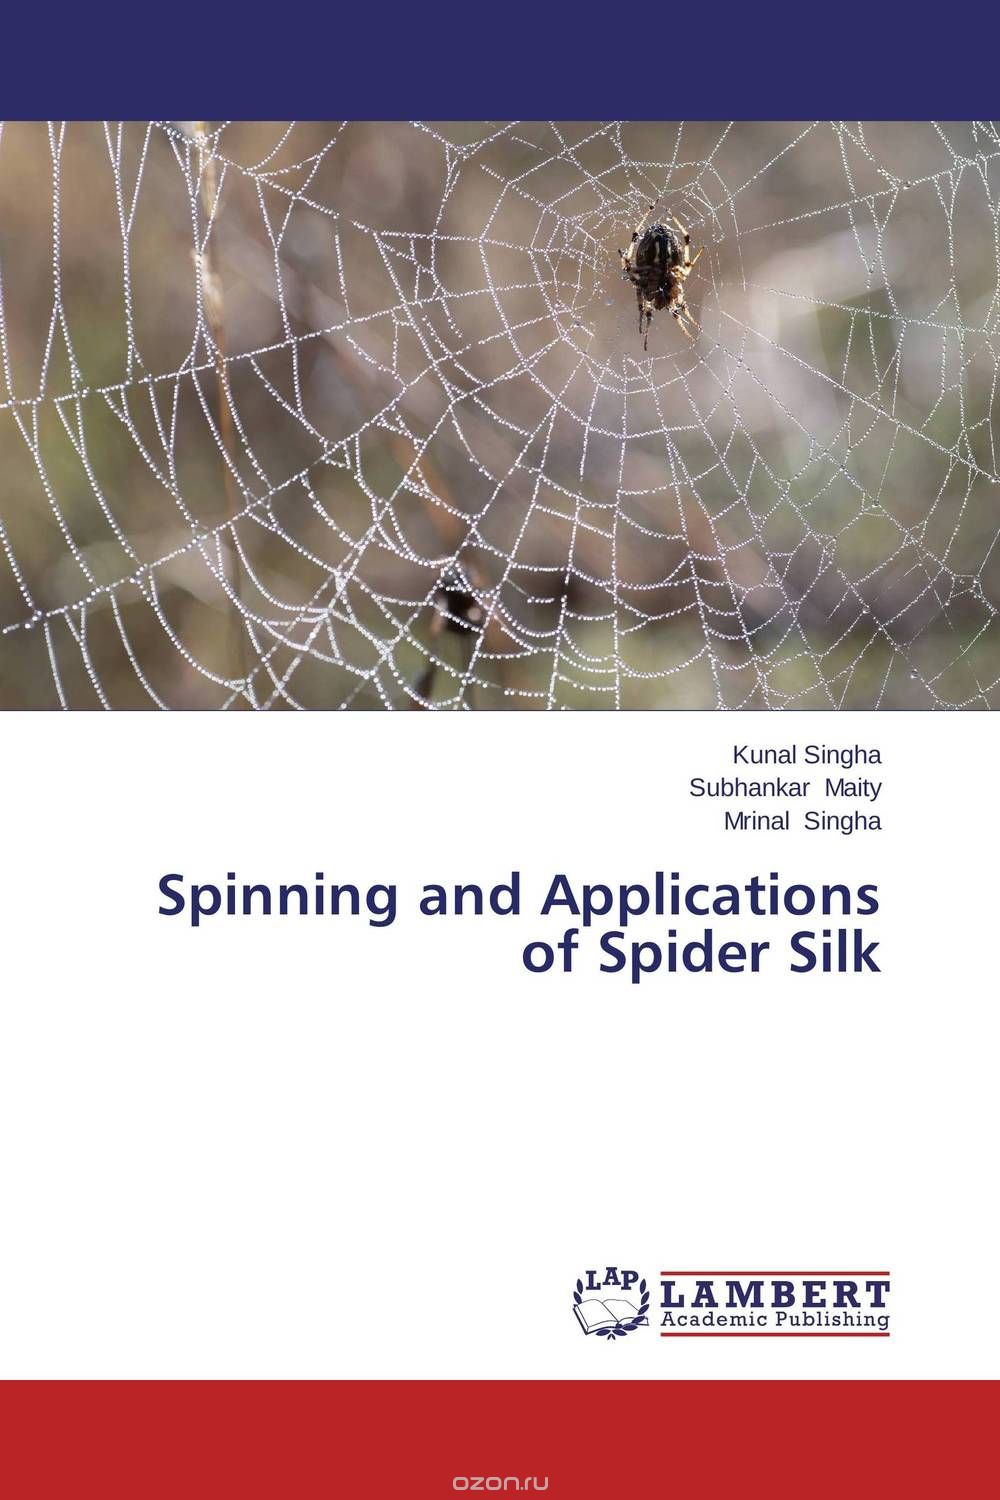 Скачать книгу "Spinning and Applications of Spider Silk"